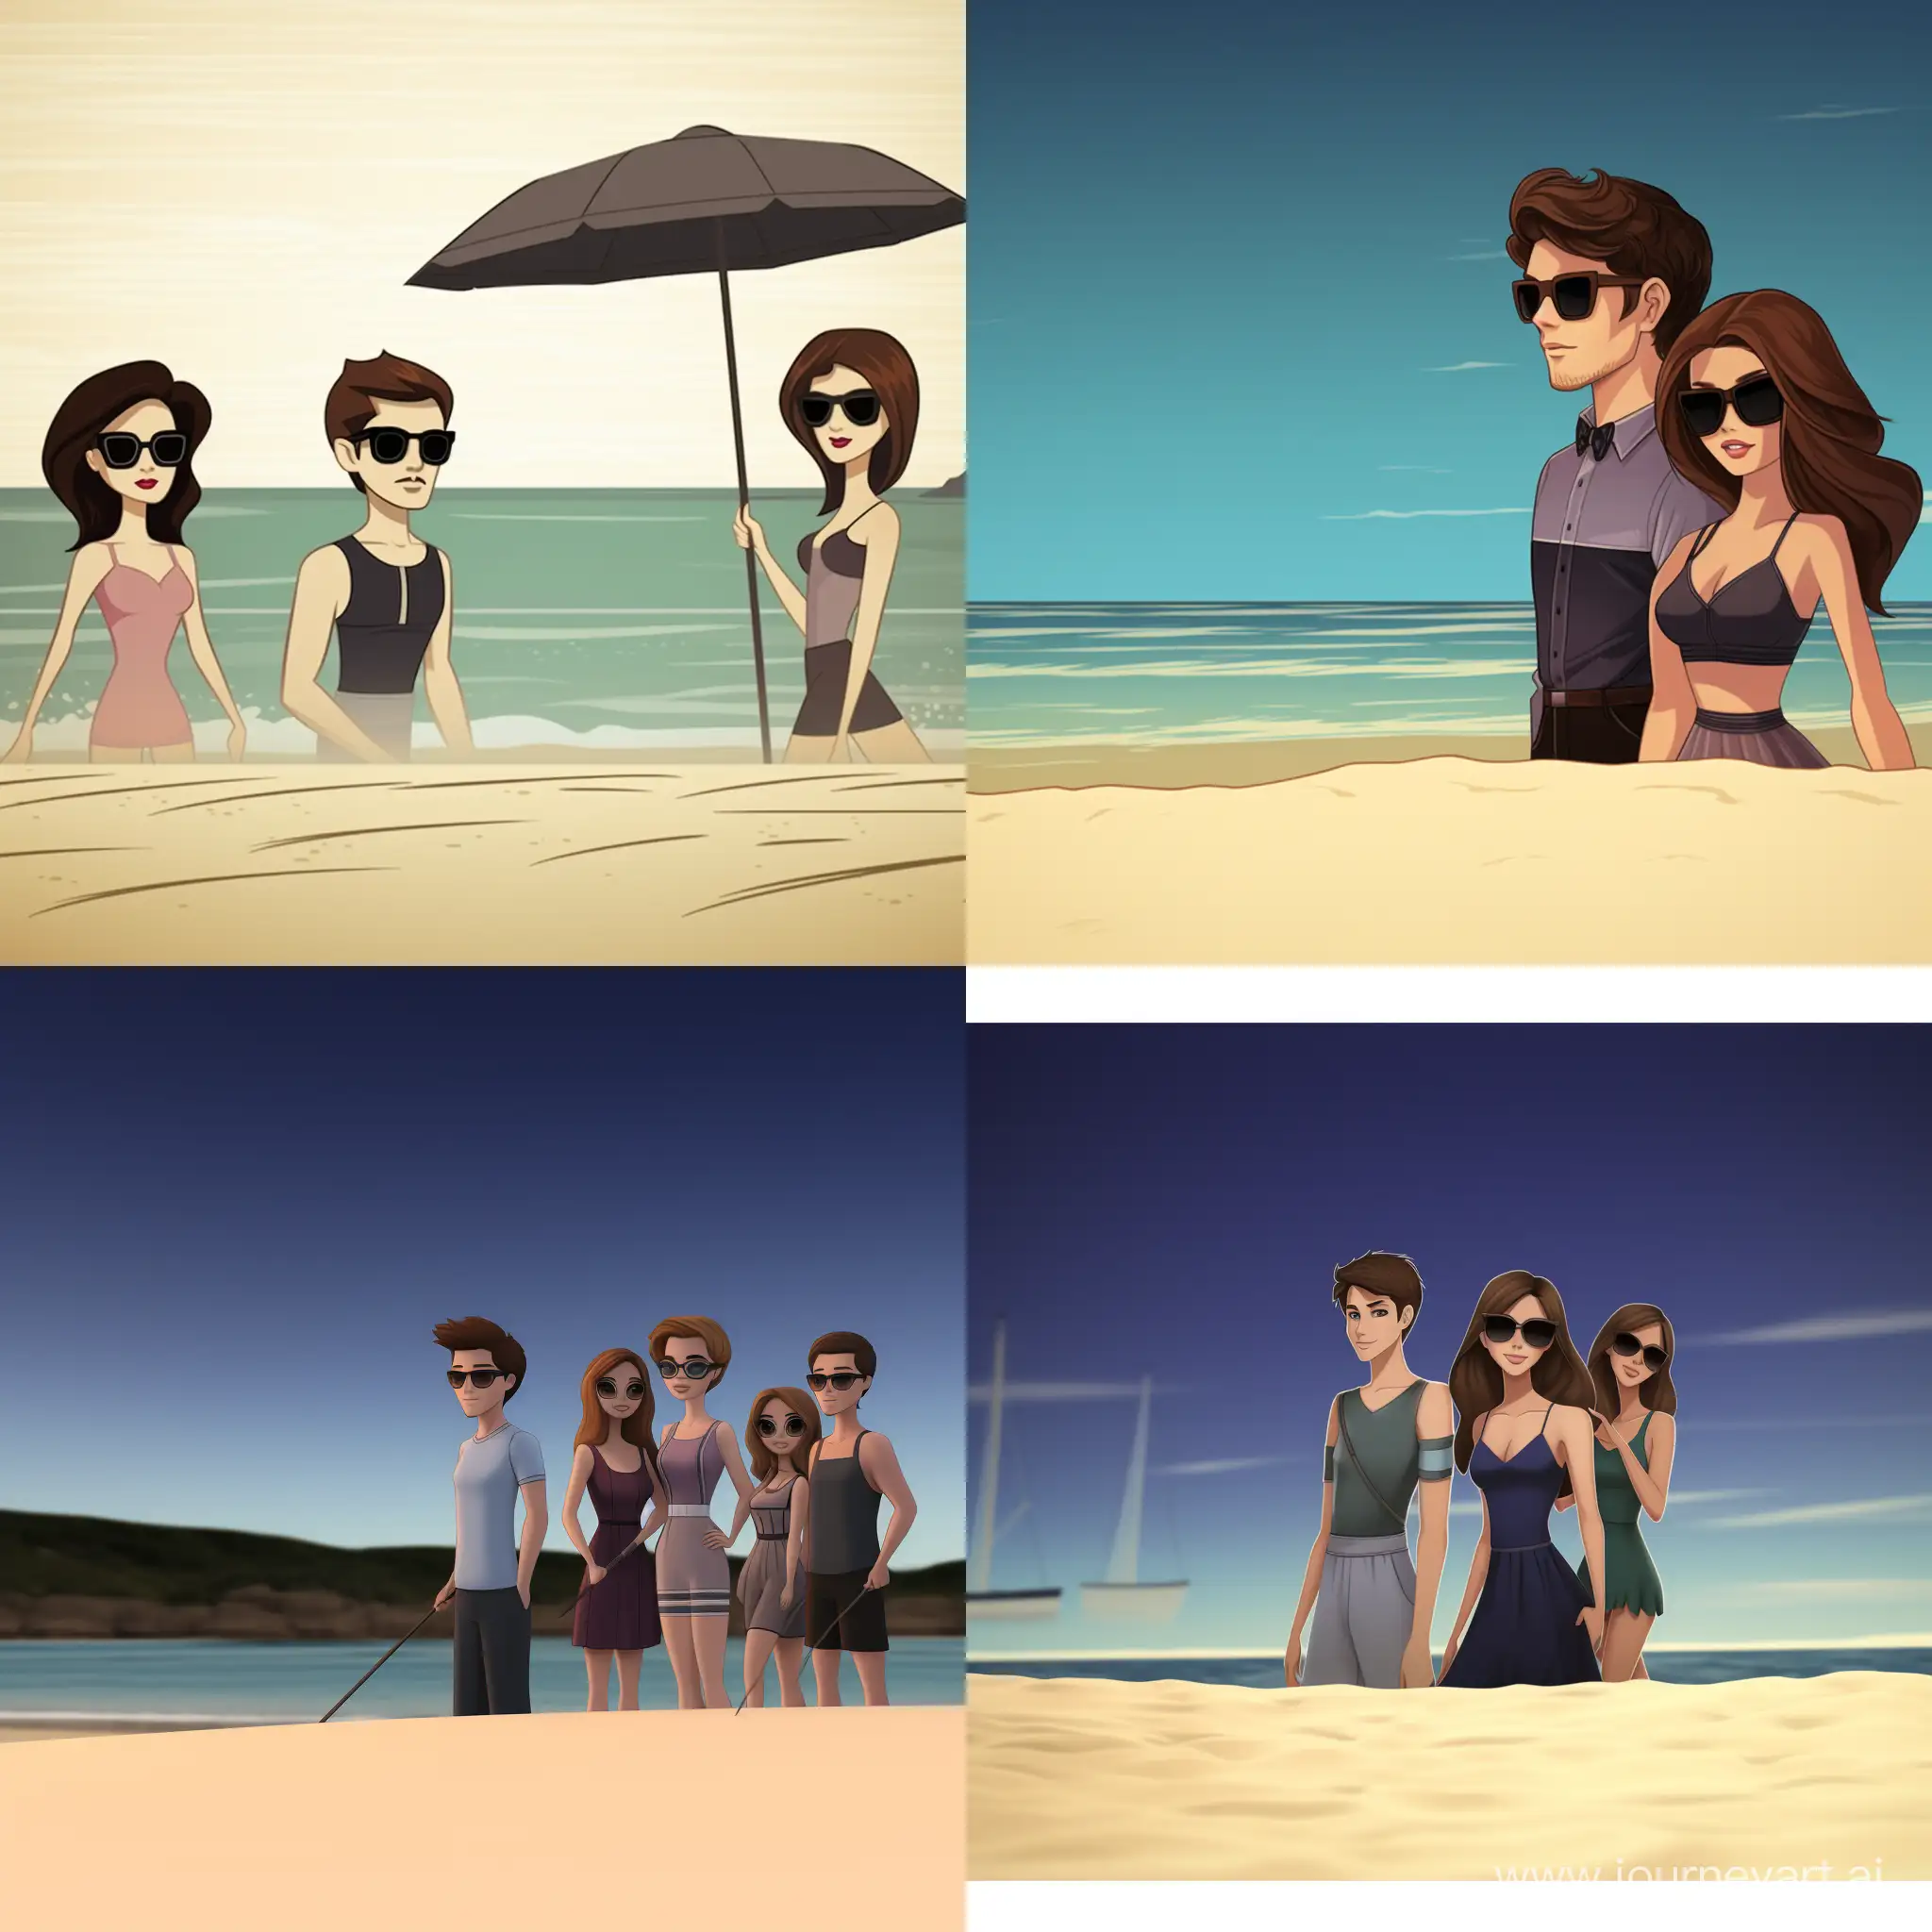 На фотографии 5 красивых женщин, они стоят в купальниках на пляже, все они смотрят на одного красивого мальчика лет 8 который стоит рядом с ними, этот мальчик сын одной из женщин, он стоит в плавках фотография в стиле мультфильма